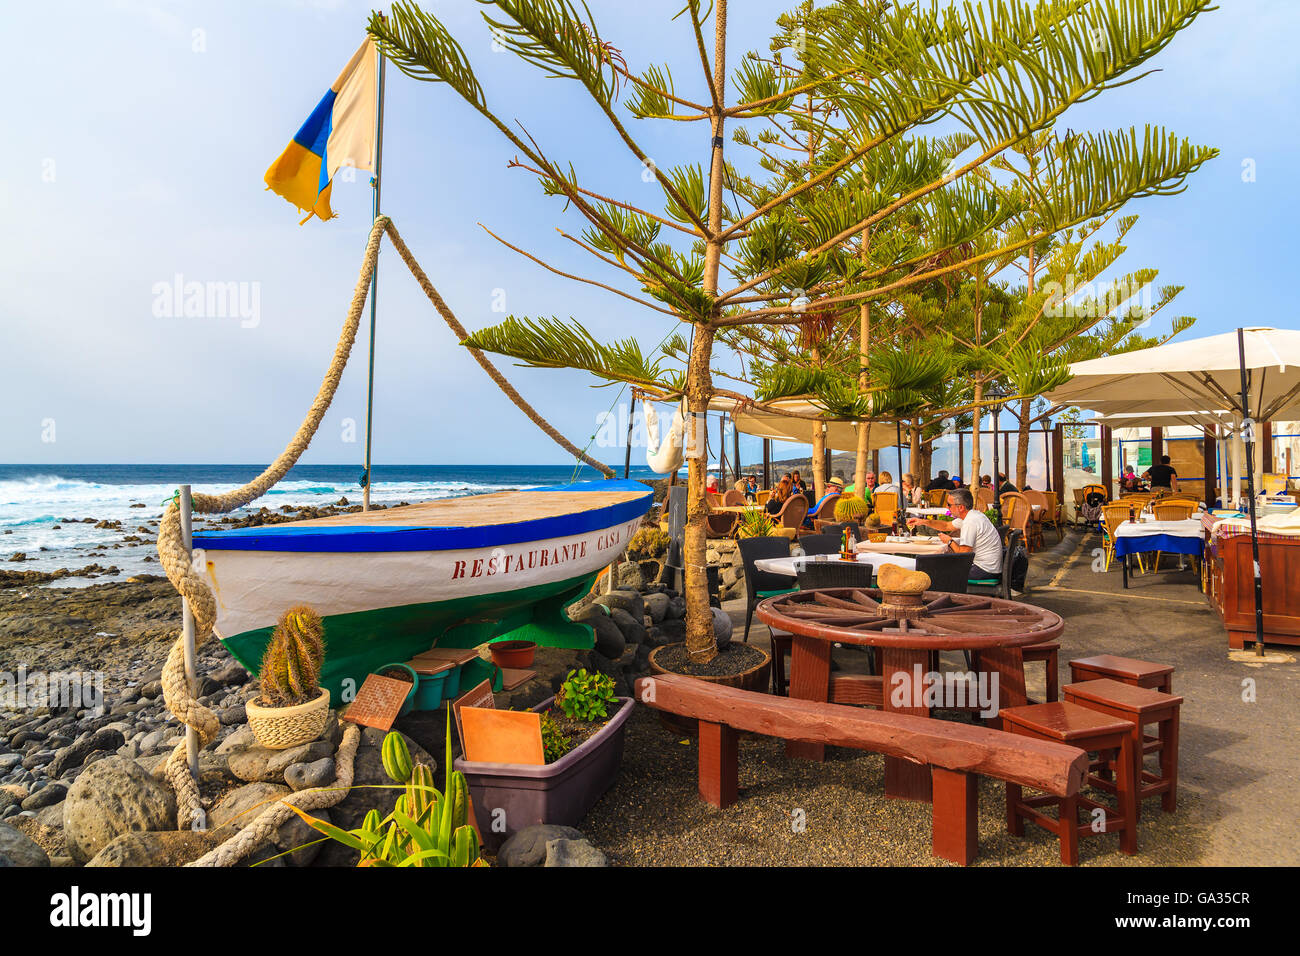 EL GOLFO, Insel LANZAROTE - 12. Januar 2015: Angelboot/Fischerboot in typischen Restaurant auf der Küste von Lanzarote Insel im Fischerdorf El Golfo. Kanarischen Inseln sind ein beliebtes Urlaubsziel. Stockfoto